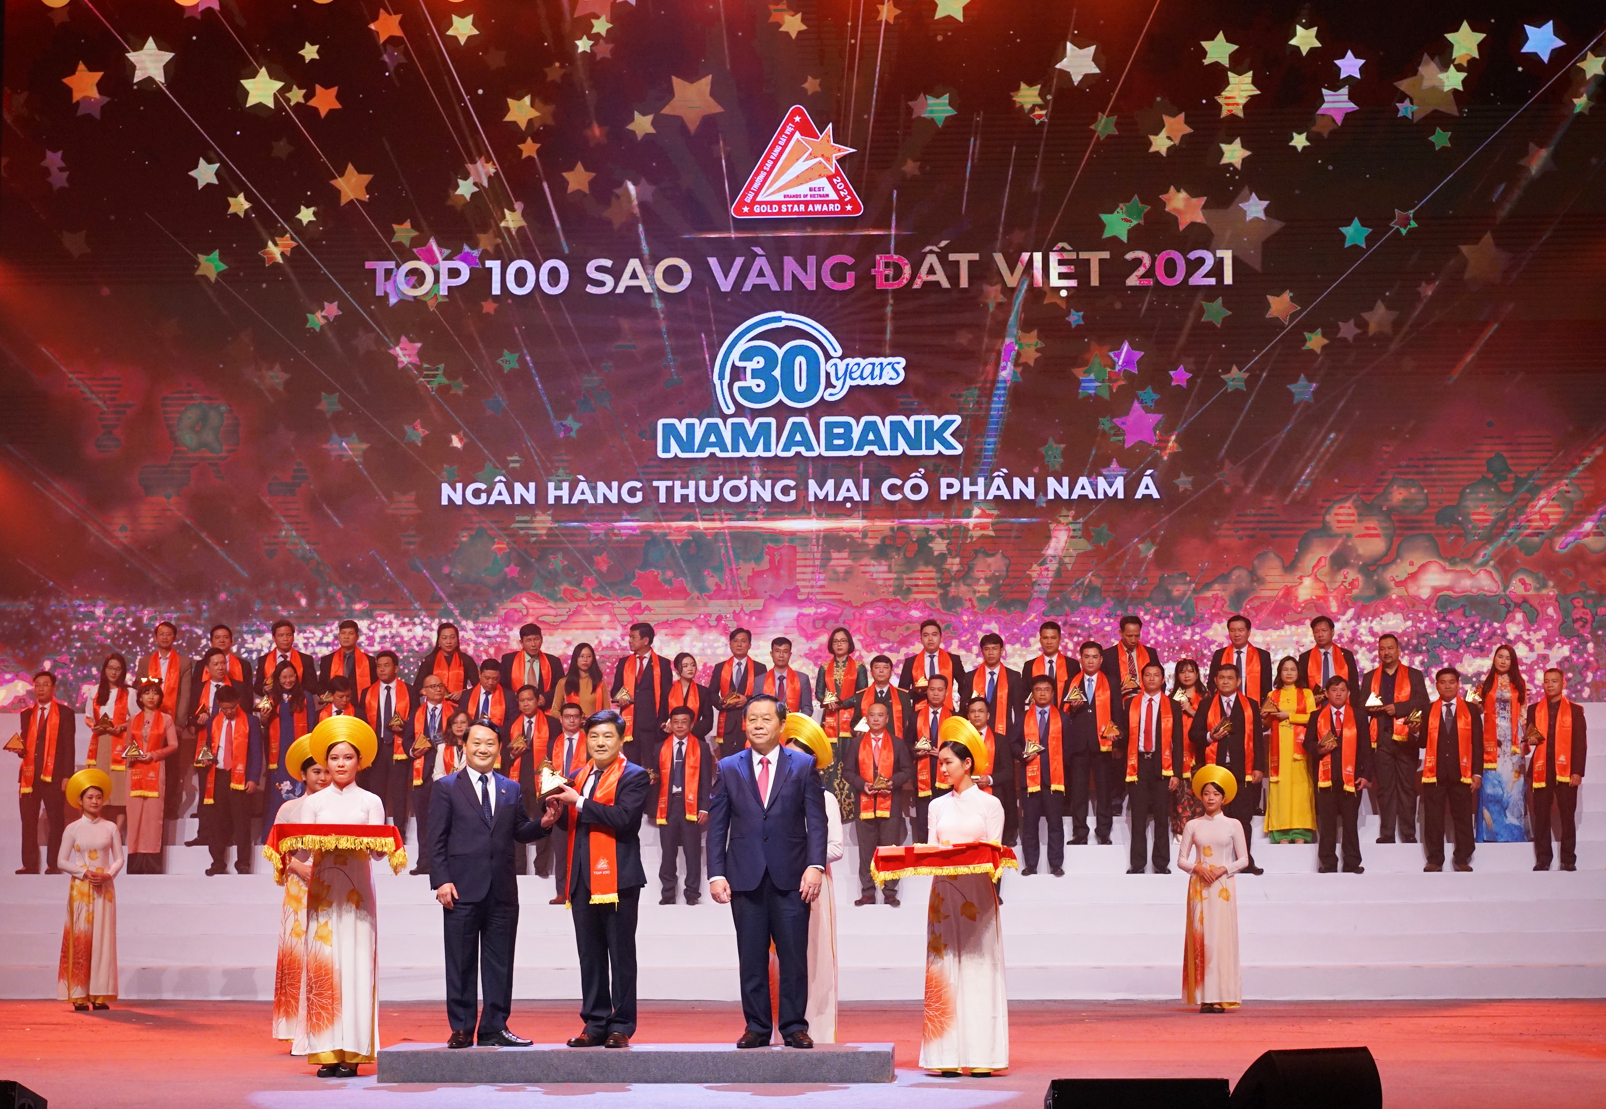 Đại diện Nam A Bank, ông Lê Anh Tú - Phó Tổng giám đốc - nhận giải thưởng Sao Vàng đất Việt 2021